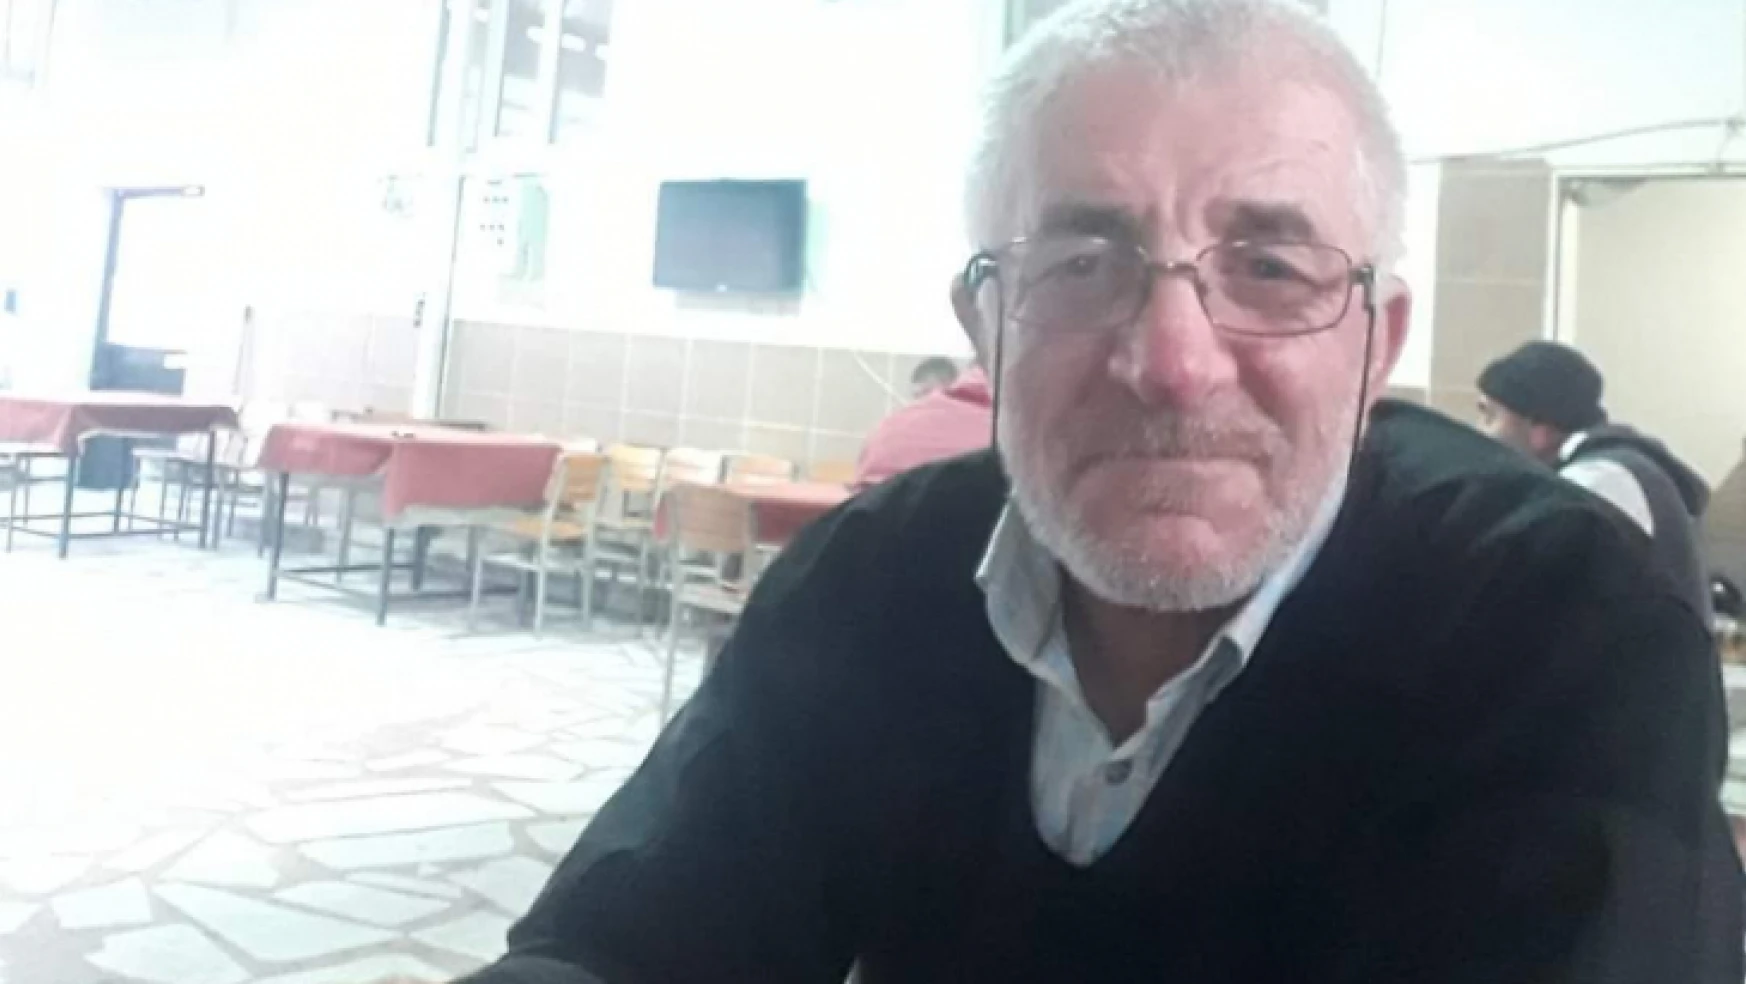 Nazilli'de kaybolan yaşlı adamdan iyi haber